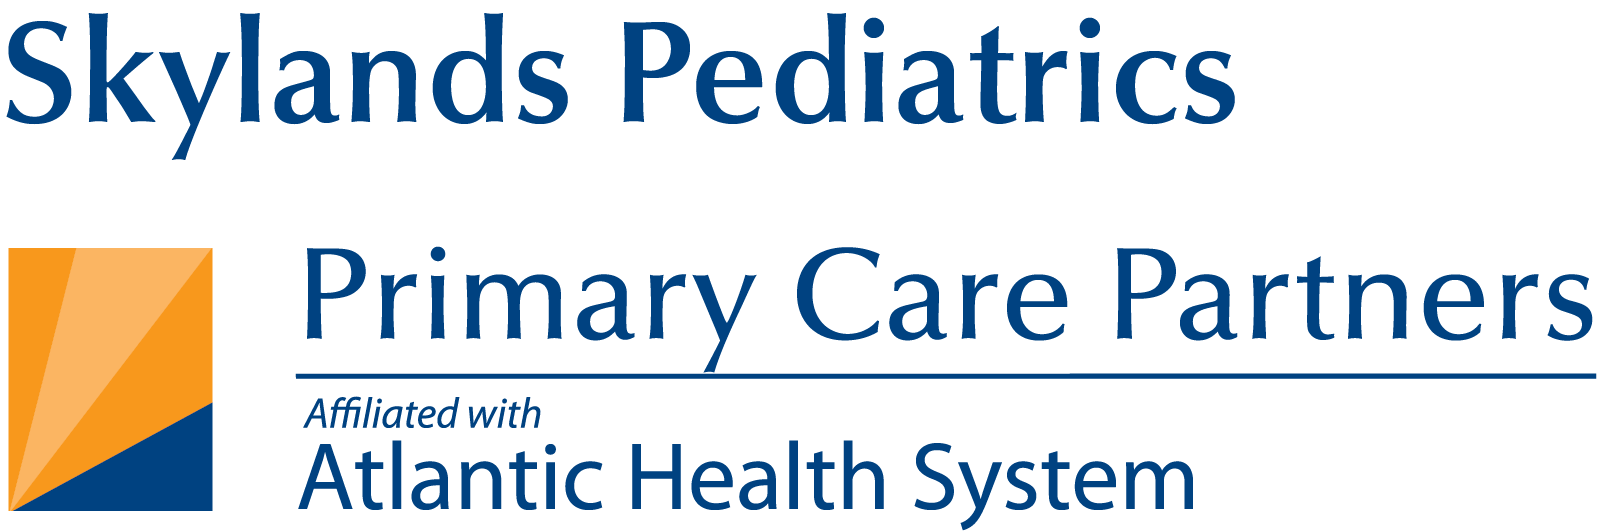 skylands pediatrics pcp